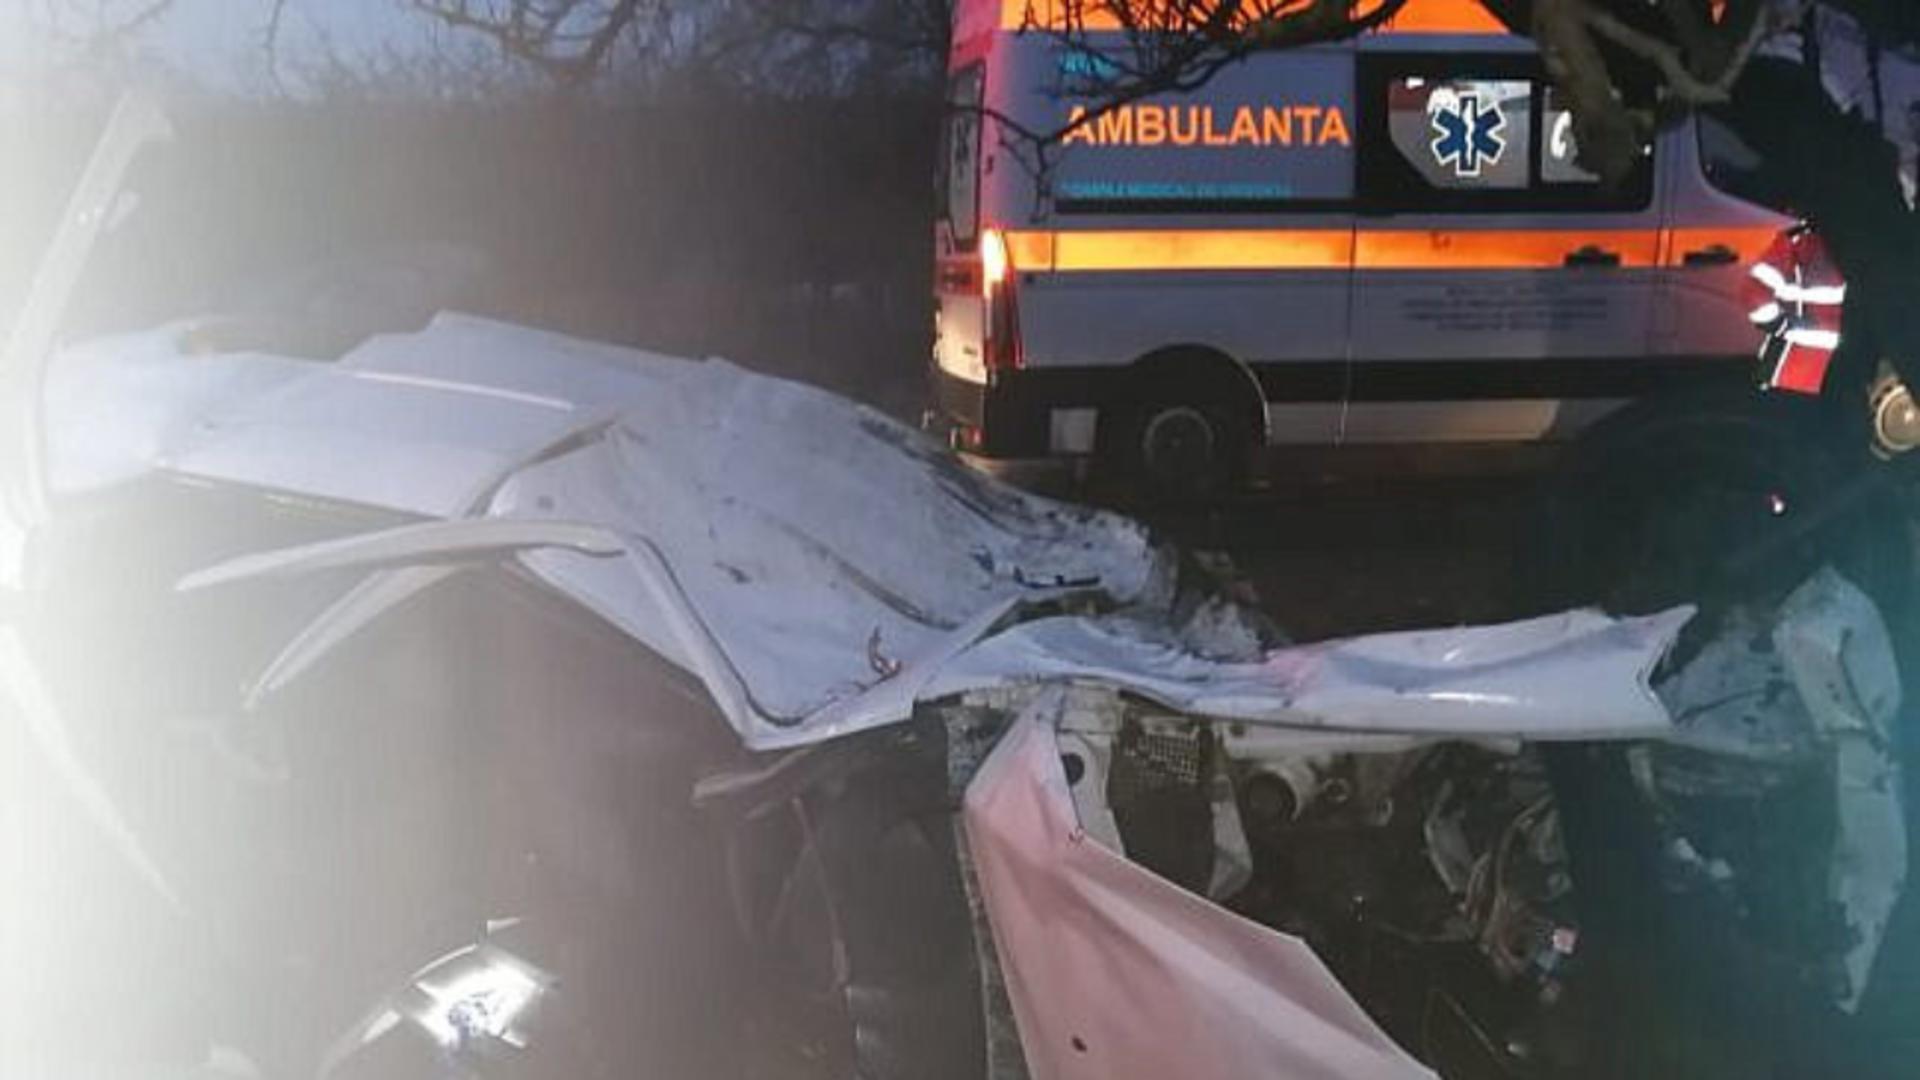 IMPACT violent în Suceava cu o ambulanță în misiune: O femeie a murit și o altă persoană a ajuns la spital